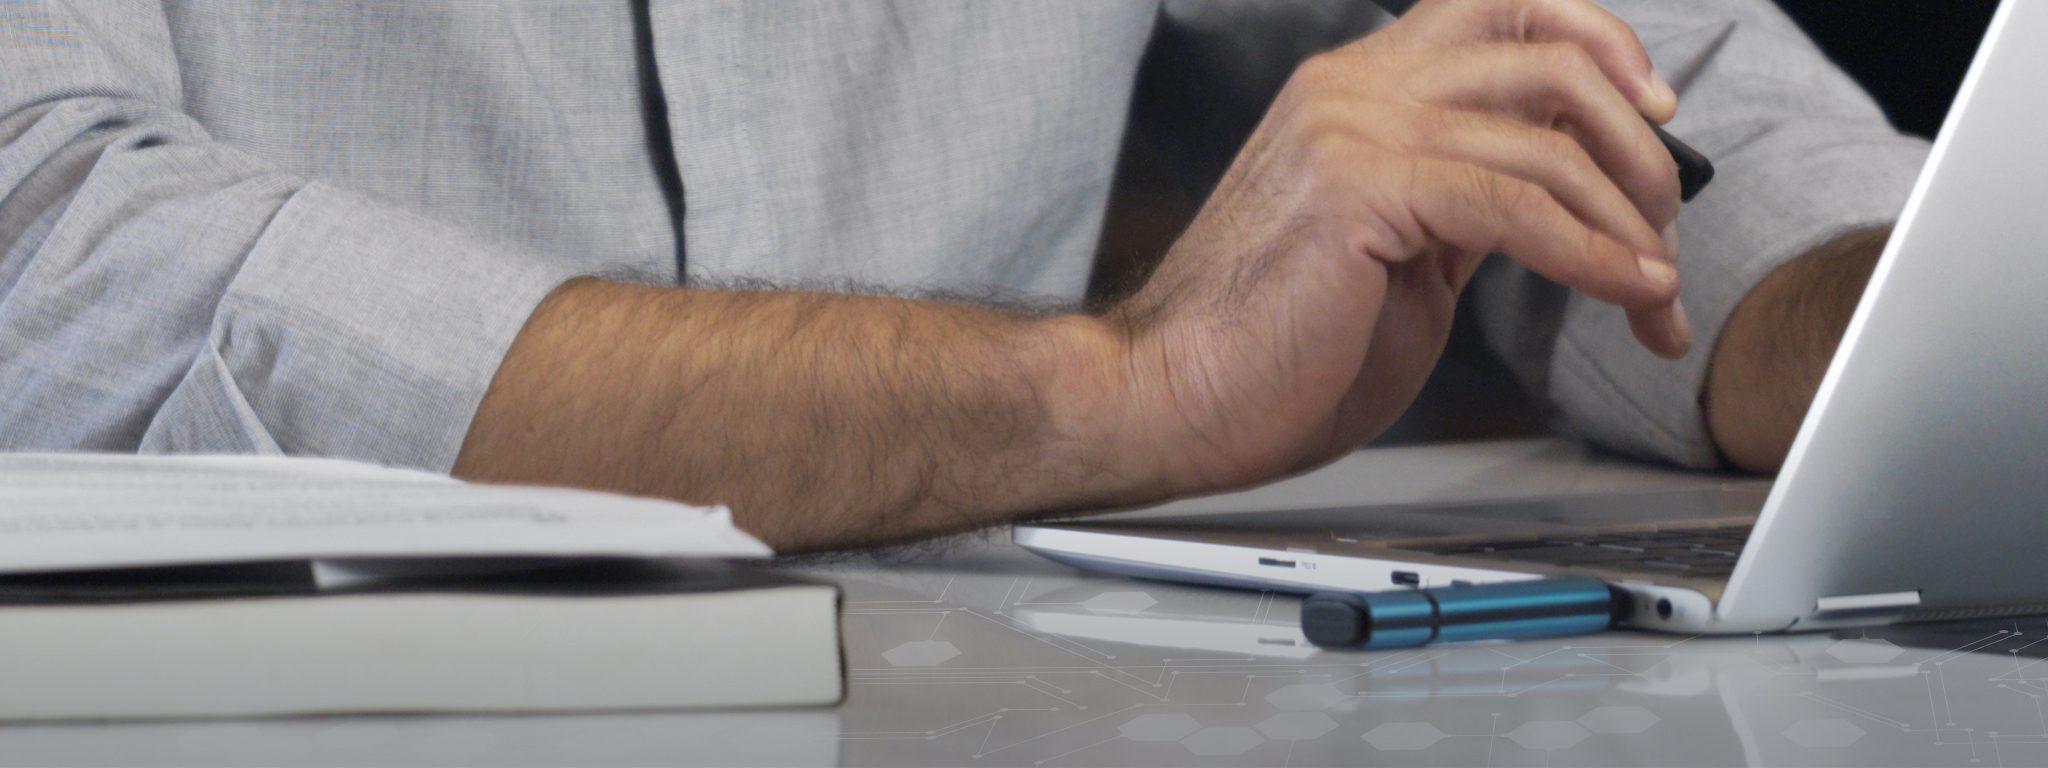 Um close de um laptop com o drive USB Kingston IronKey conectado e uma mão masculina digitando no teclado